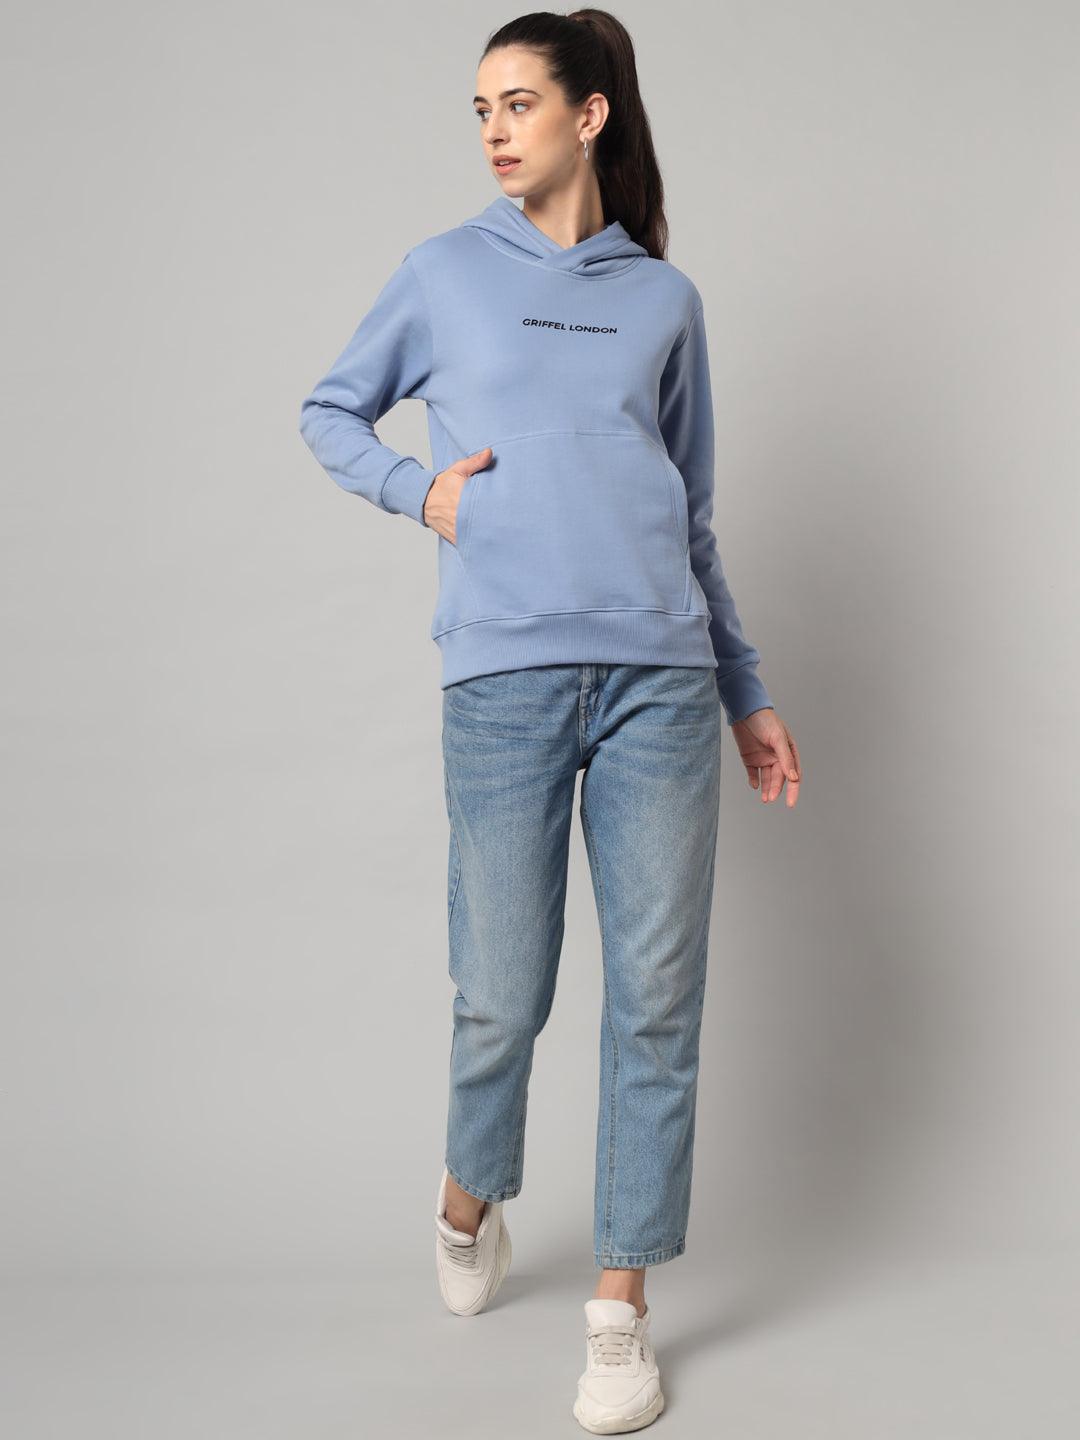 Griffel Women’s Cotton Fleece Full Sleeve Sky Blue Hoodie Sweatshirt - griffel